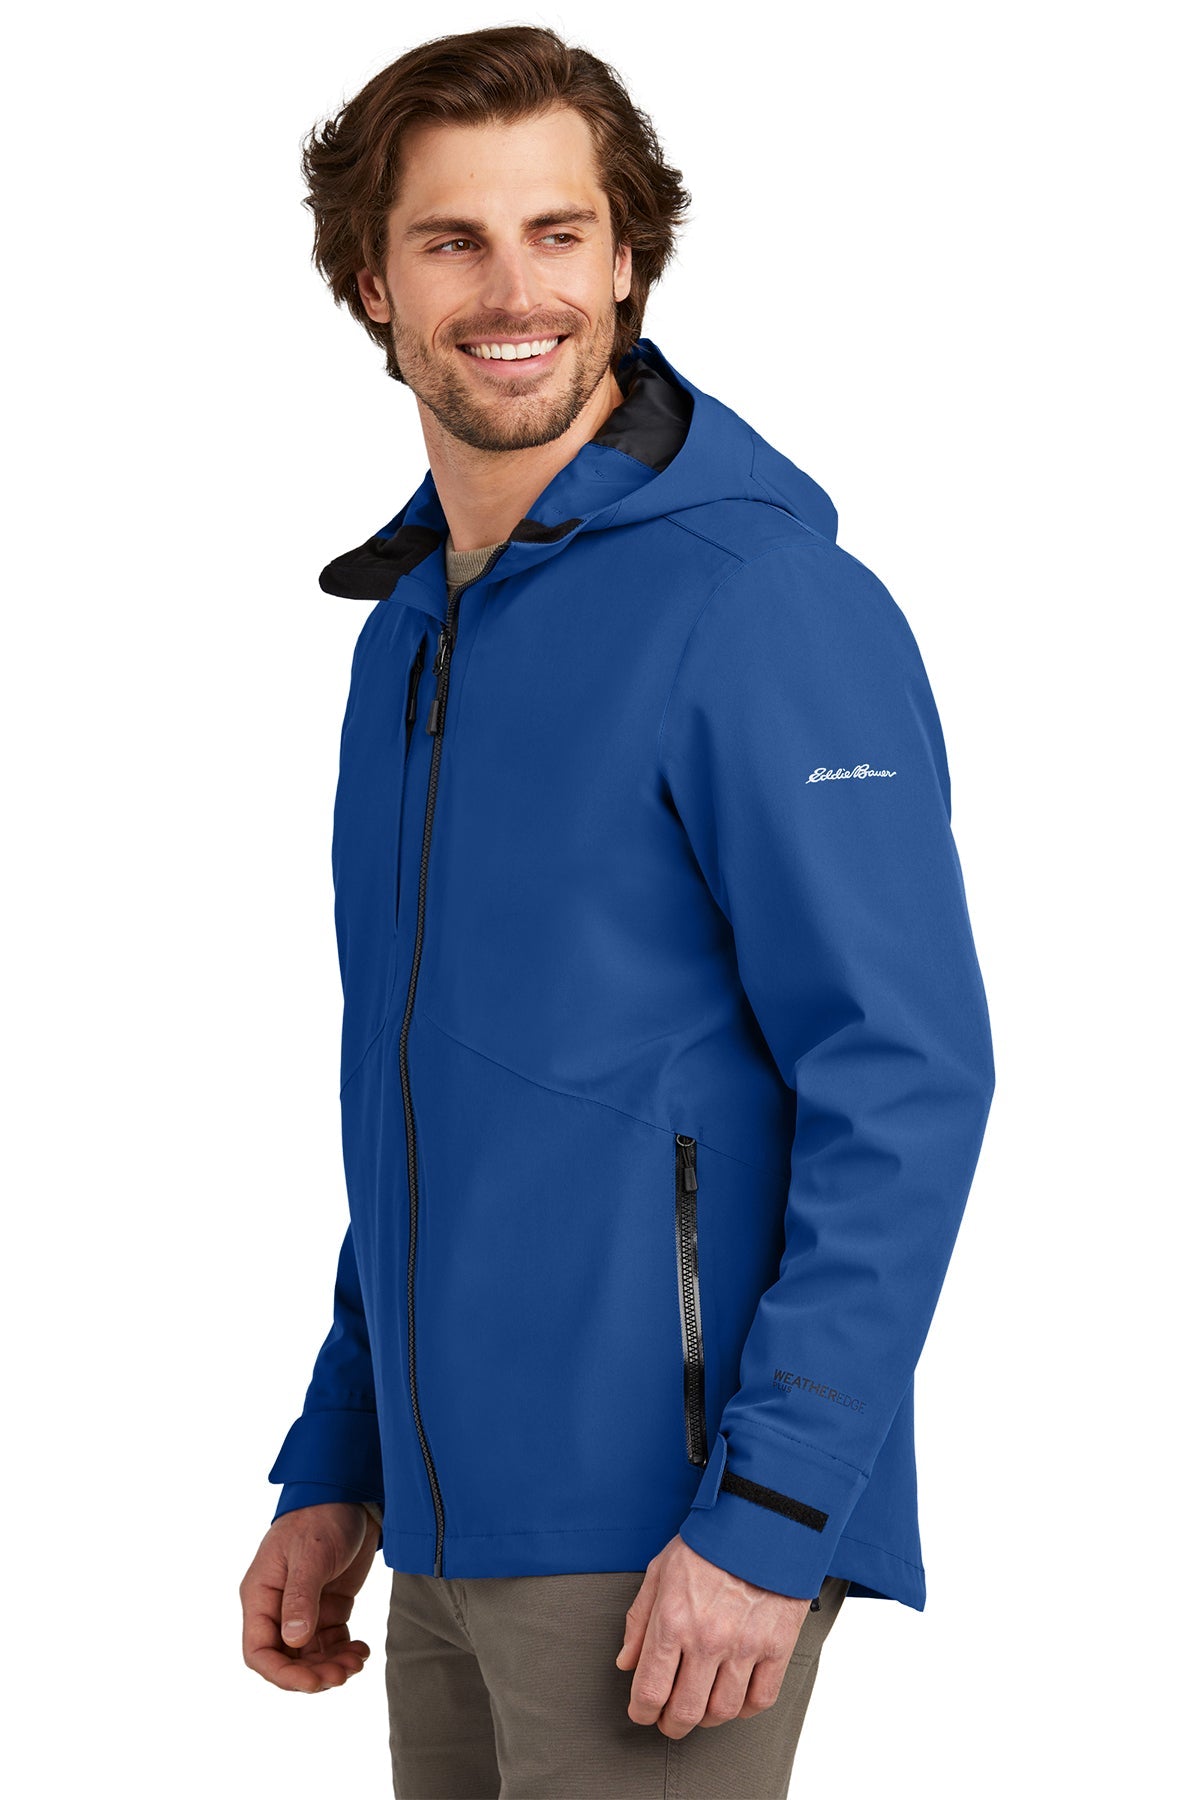 Eddie Bauer WeatherEdge Customized Jackets, Cobalt Blue